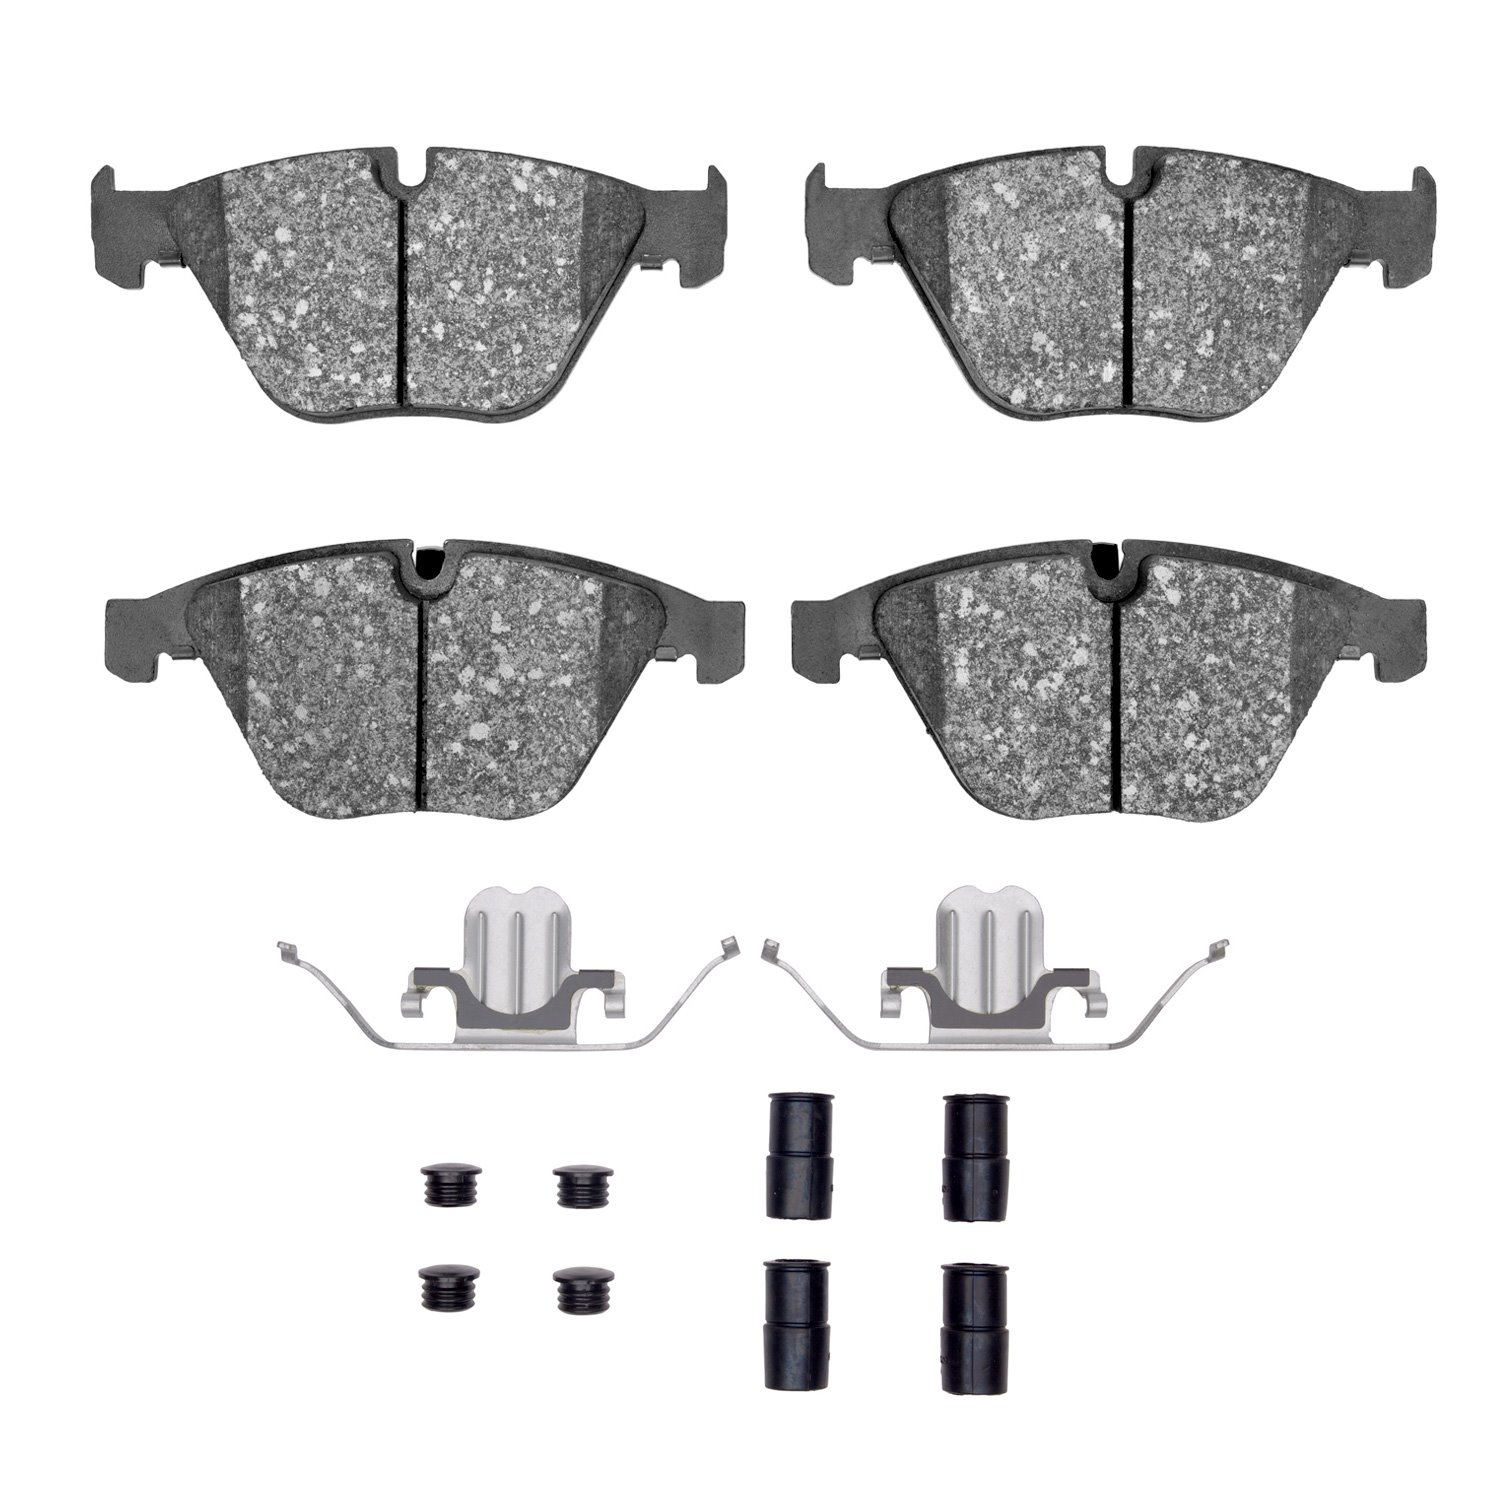 1310-1260-01 3000-Series Ceramic Brake Pads & Hardware Kit, 2007-2015 BMW, Position: Front